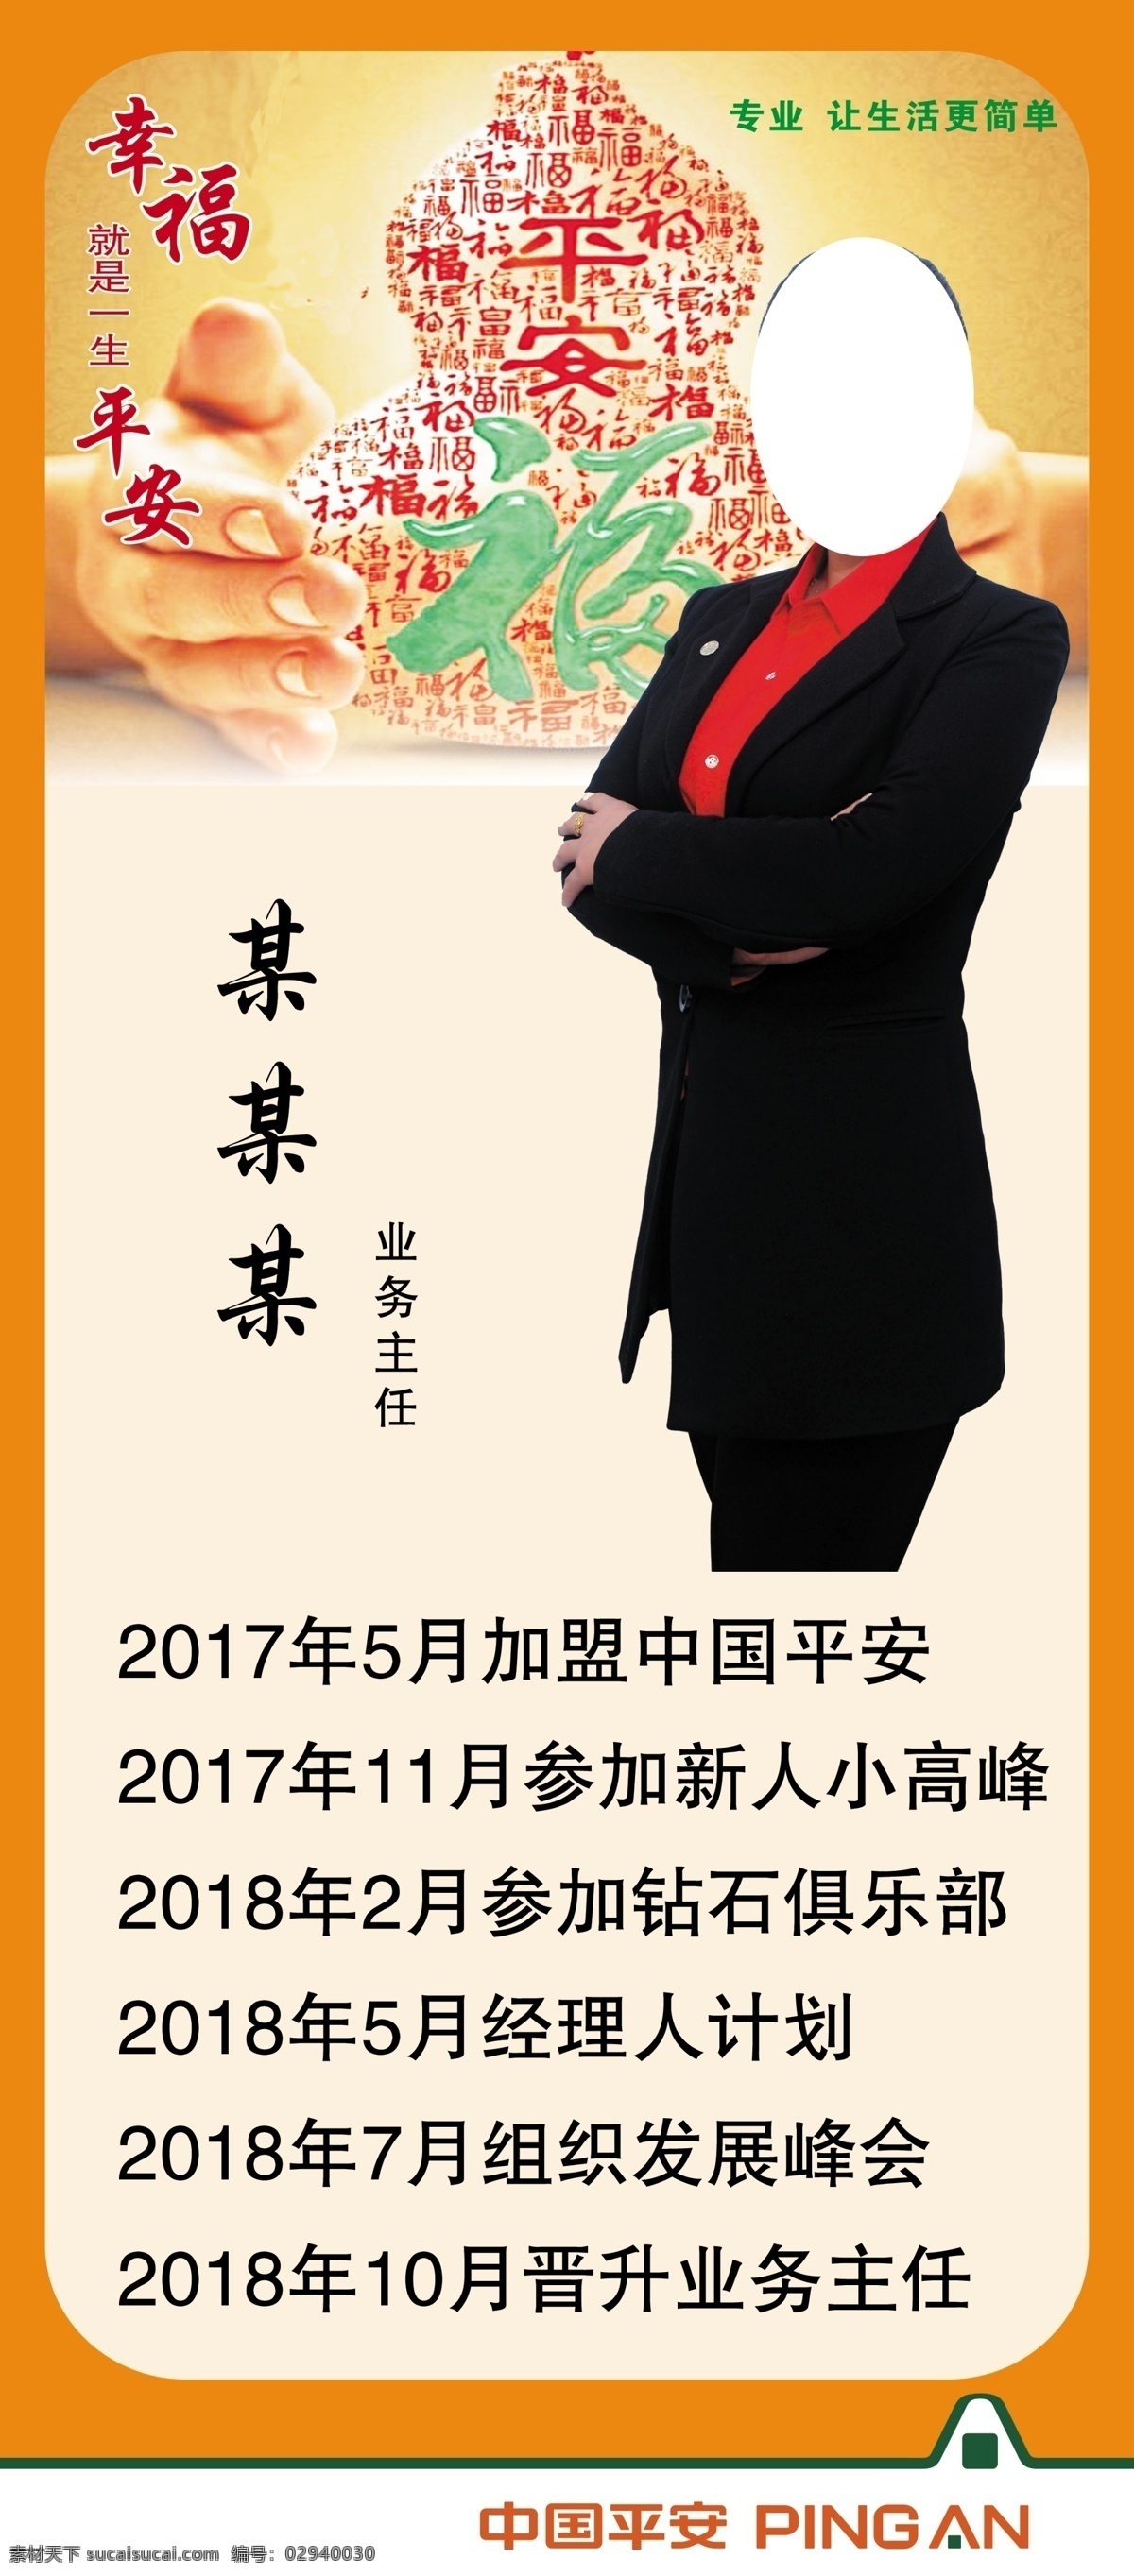 中国平安 平安福 幸福 平安保险 幸福人生 平面设计 平安名片 爱心手势 平安 展板模板